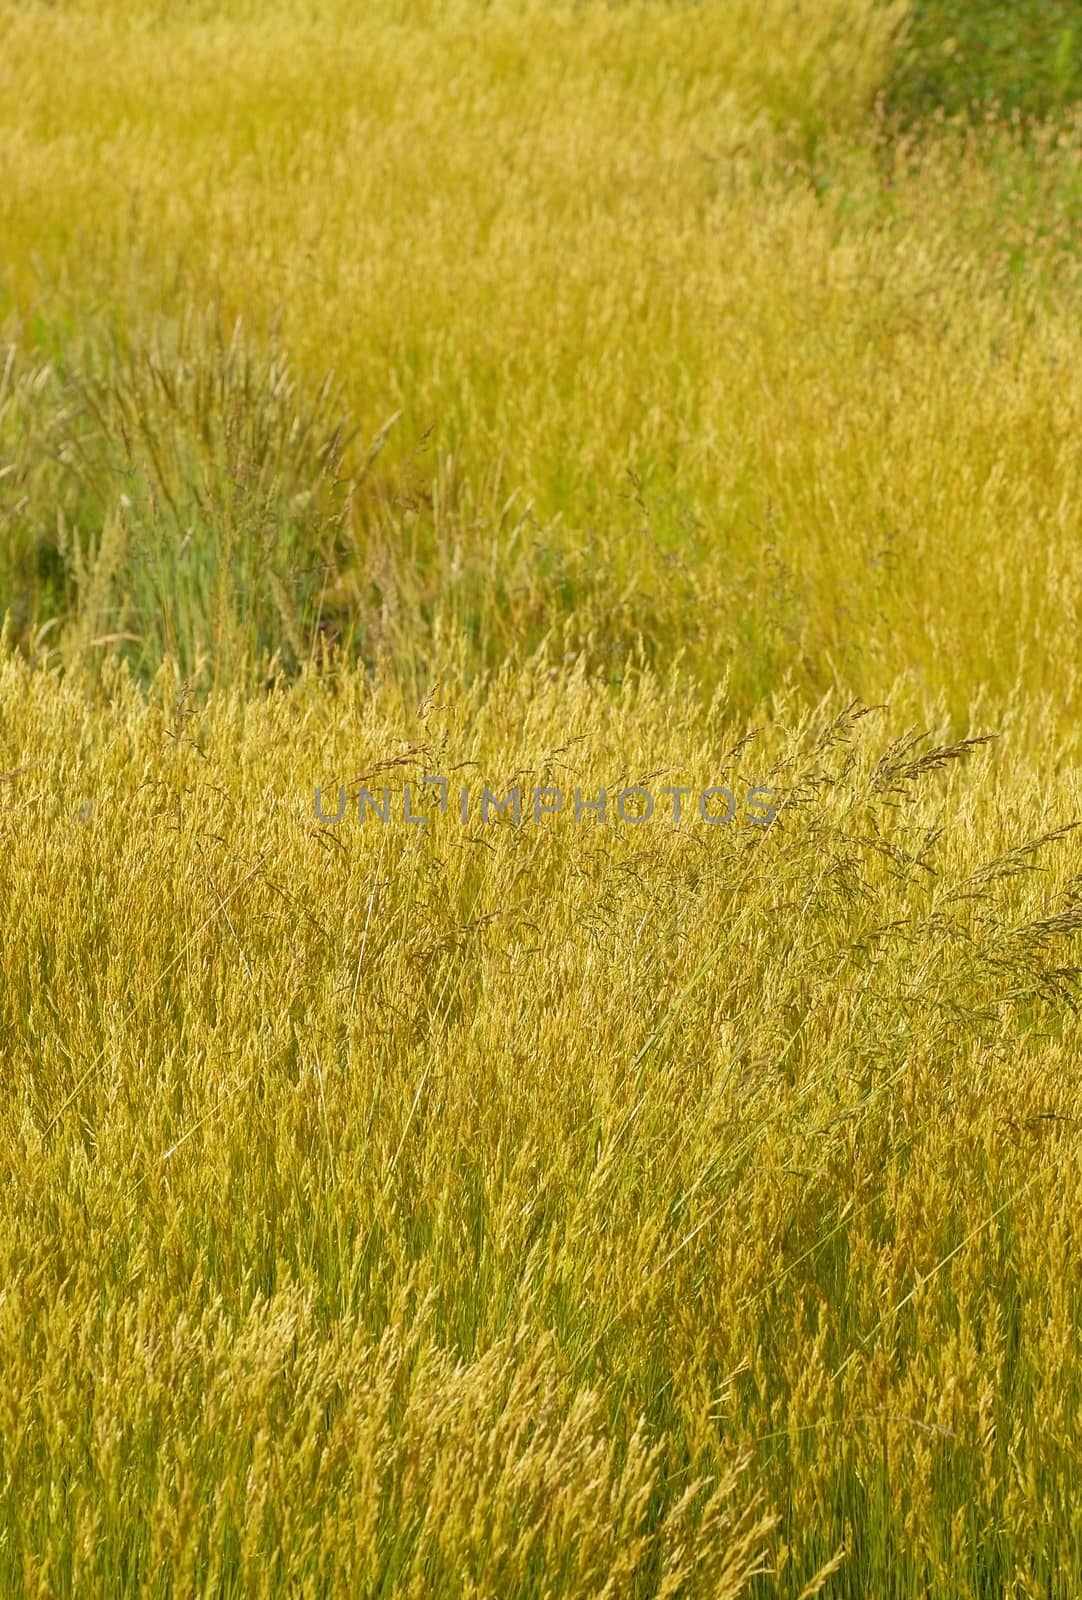 Tall grass by Vectorex